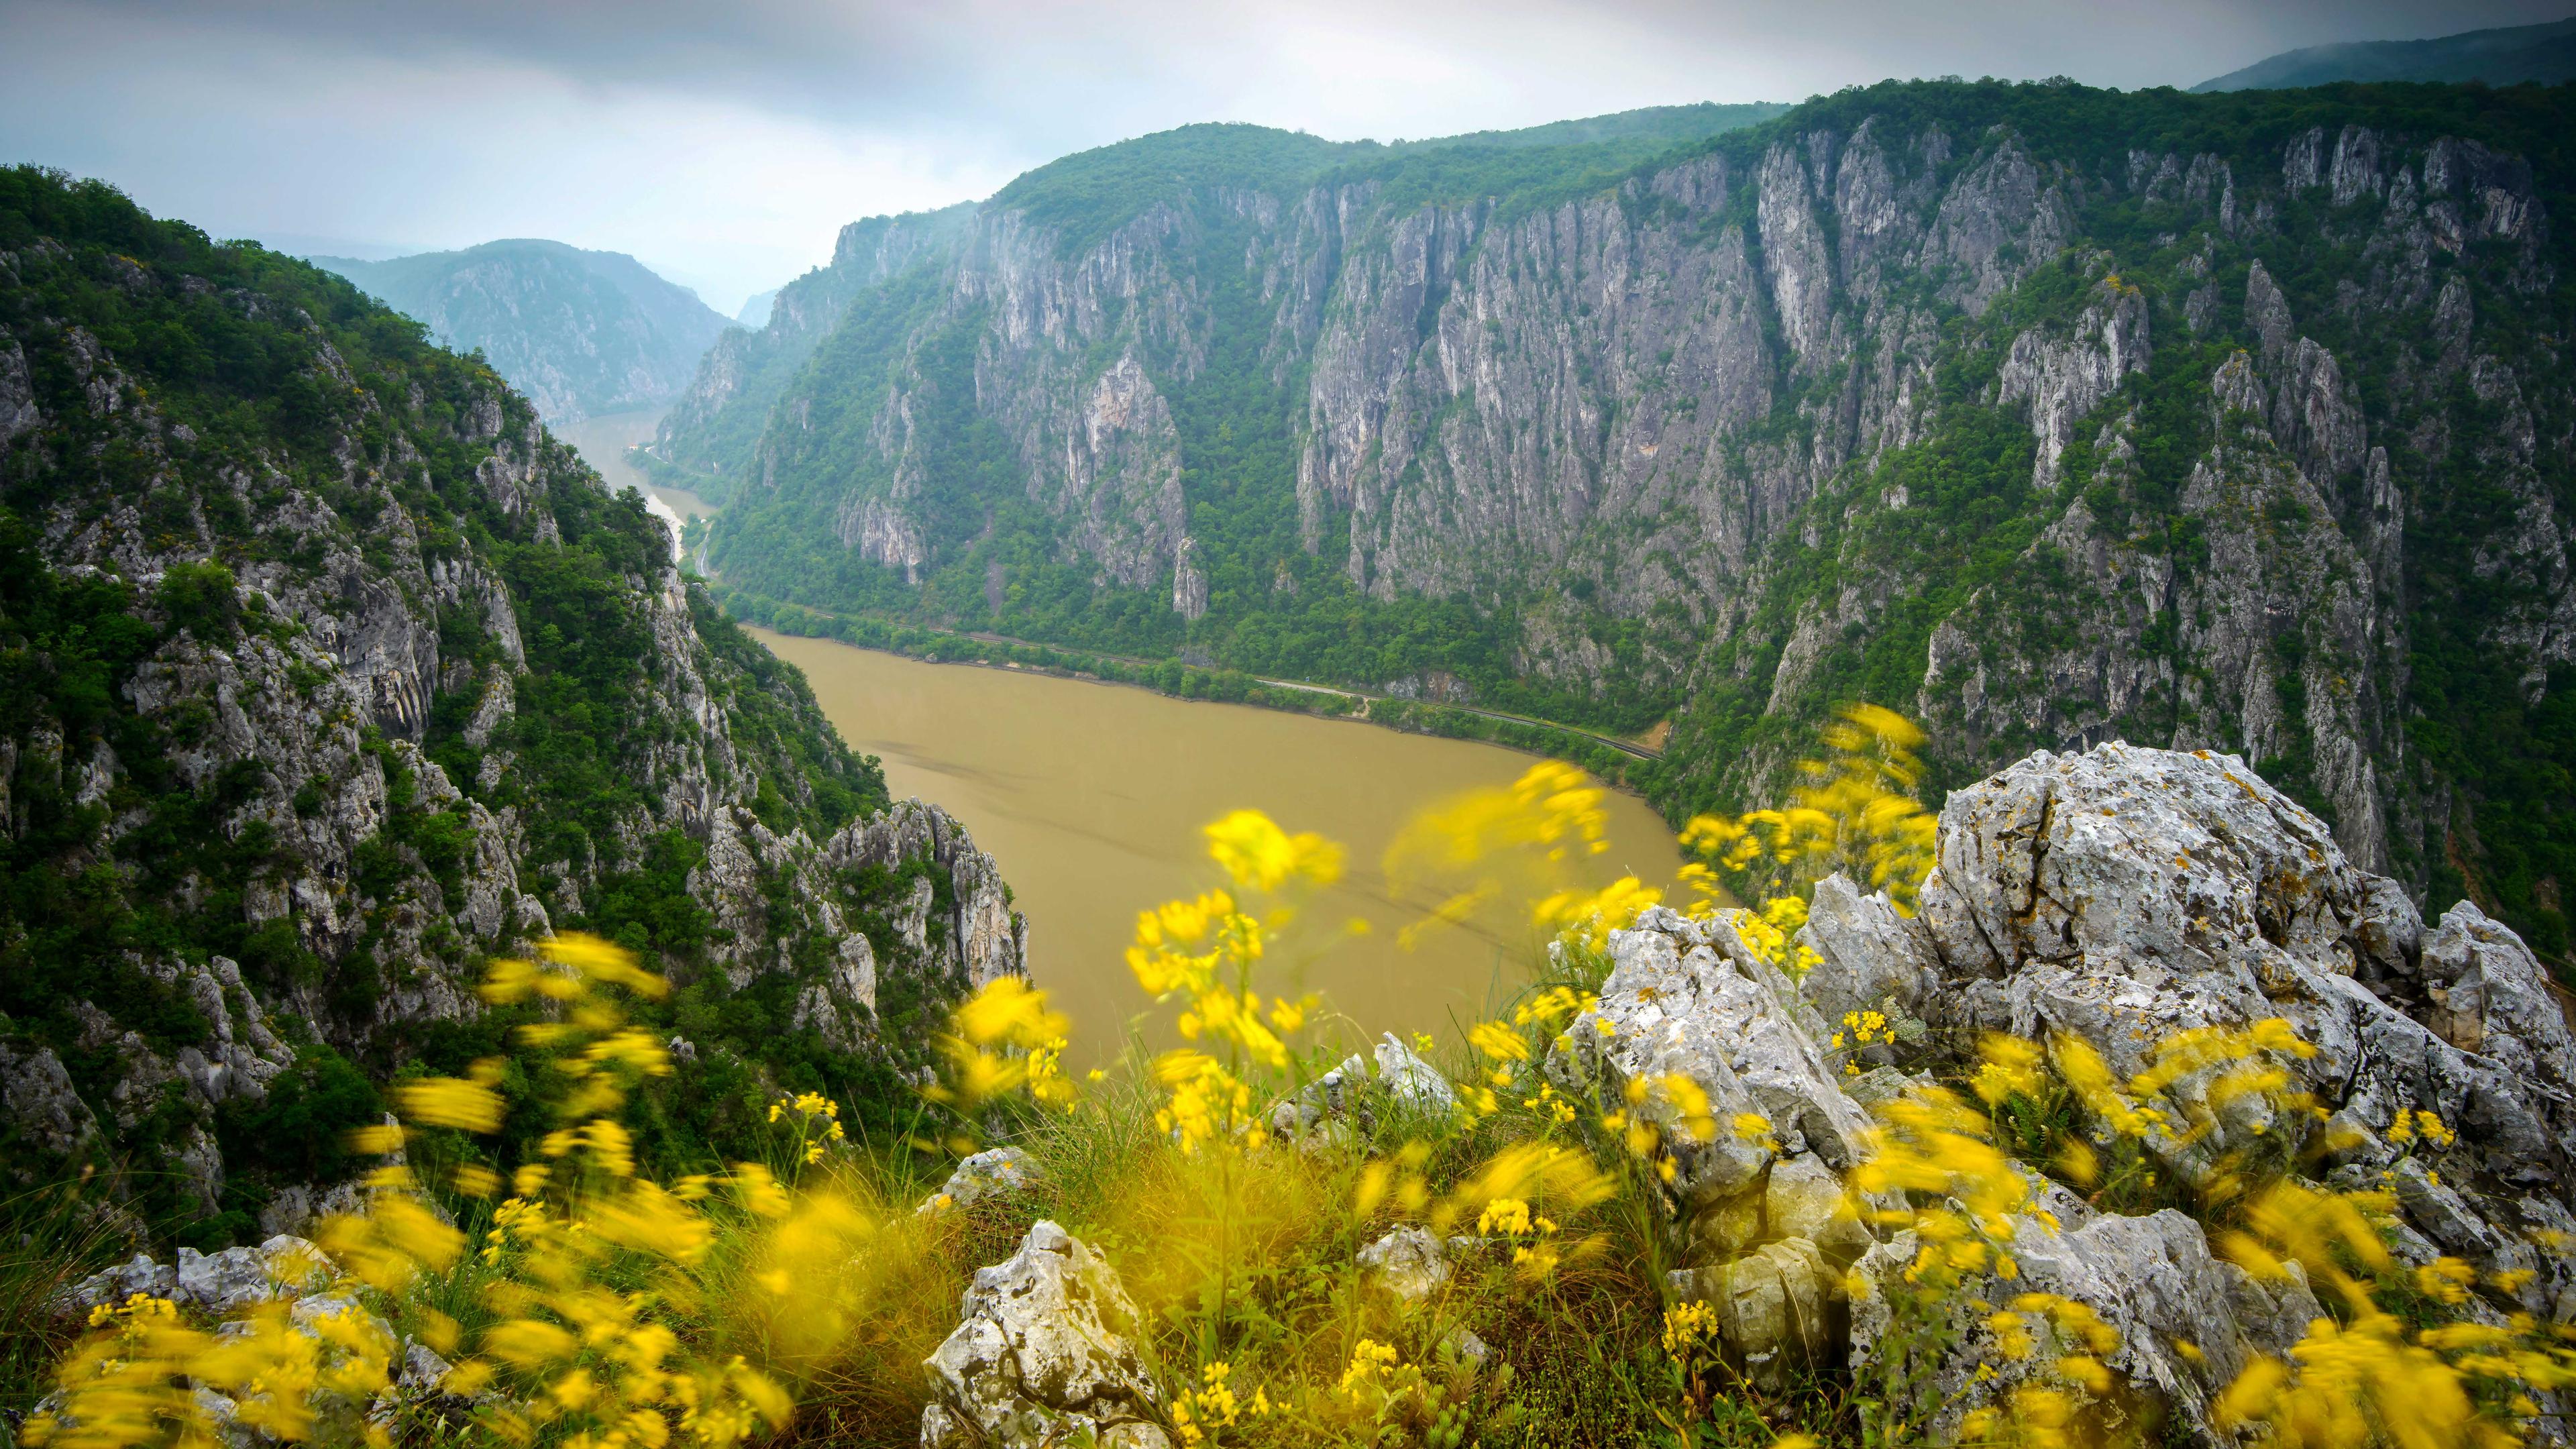  Im Hintergrund windet sich ein ockerfarbener Fluss zwischen steilen Felshängen. Im Vordergrund sind gelbe Wiesenblumen zu erkennen.